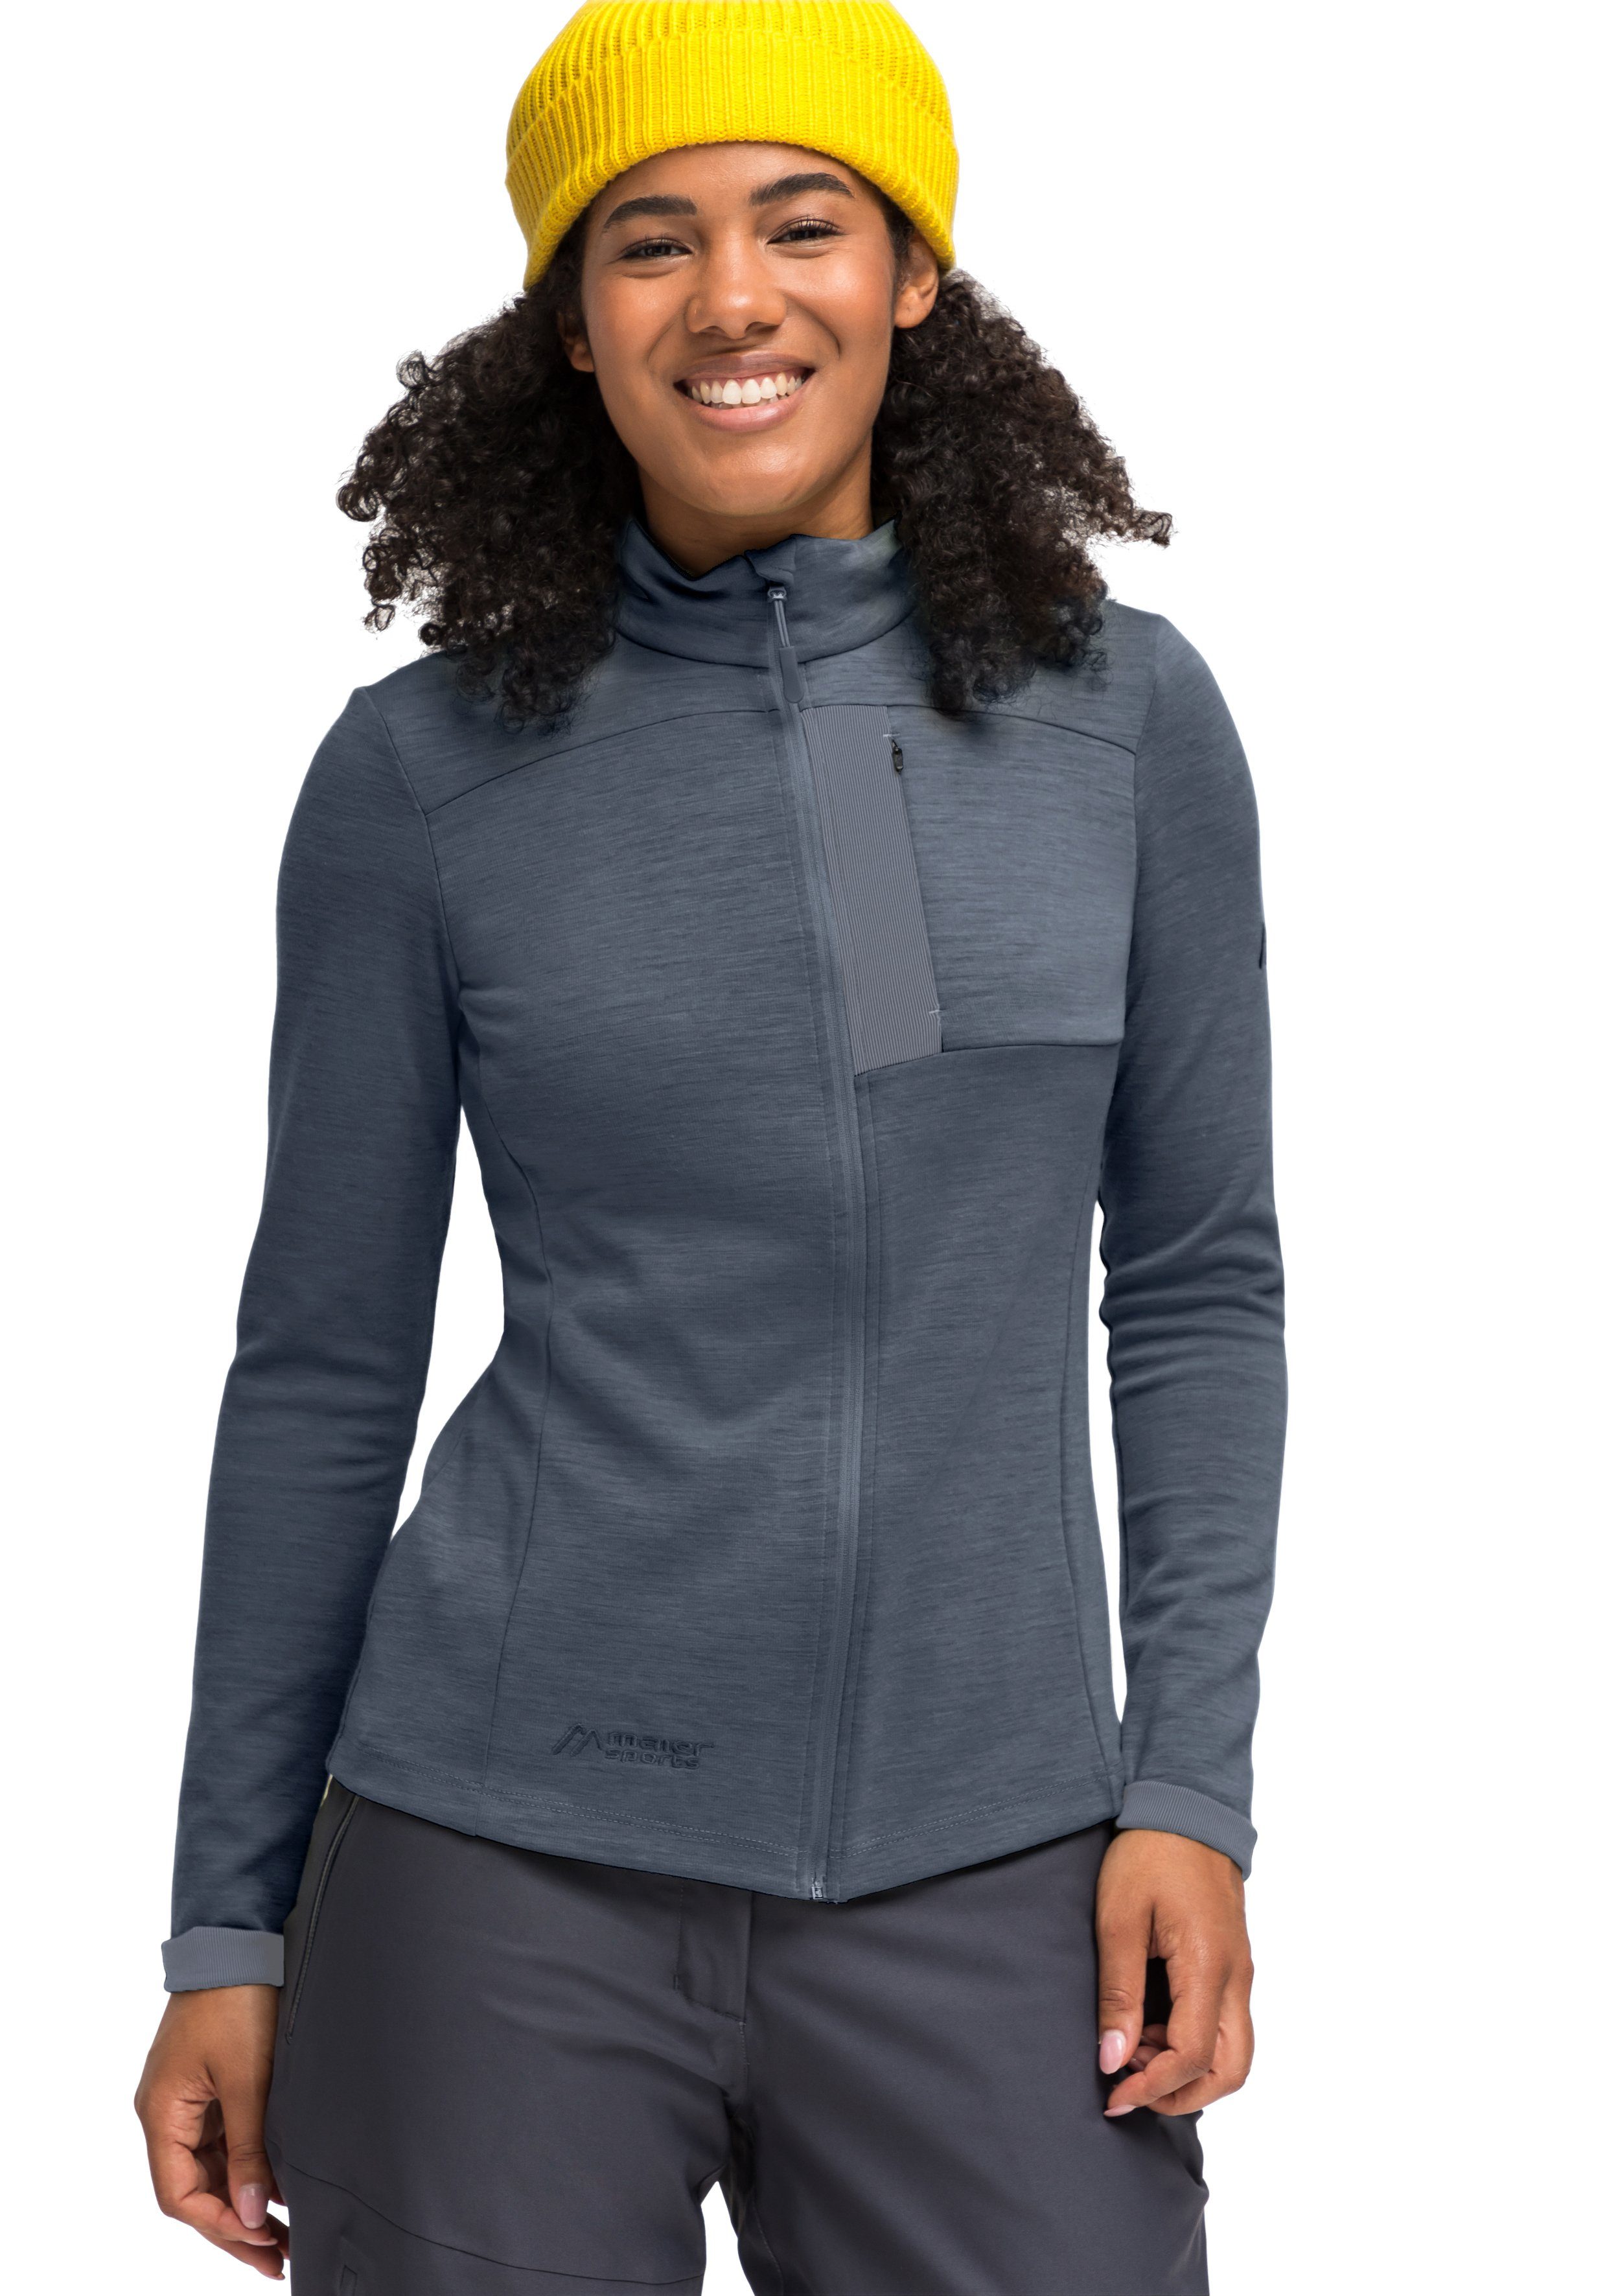 Skutvik Midlayer-Jacke ideal Damen, für graublau Sports Outdoor-Aktivitäten Funktionsshirt für Maier W